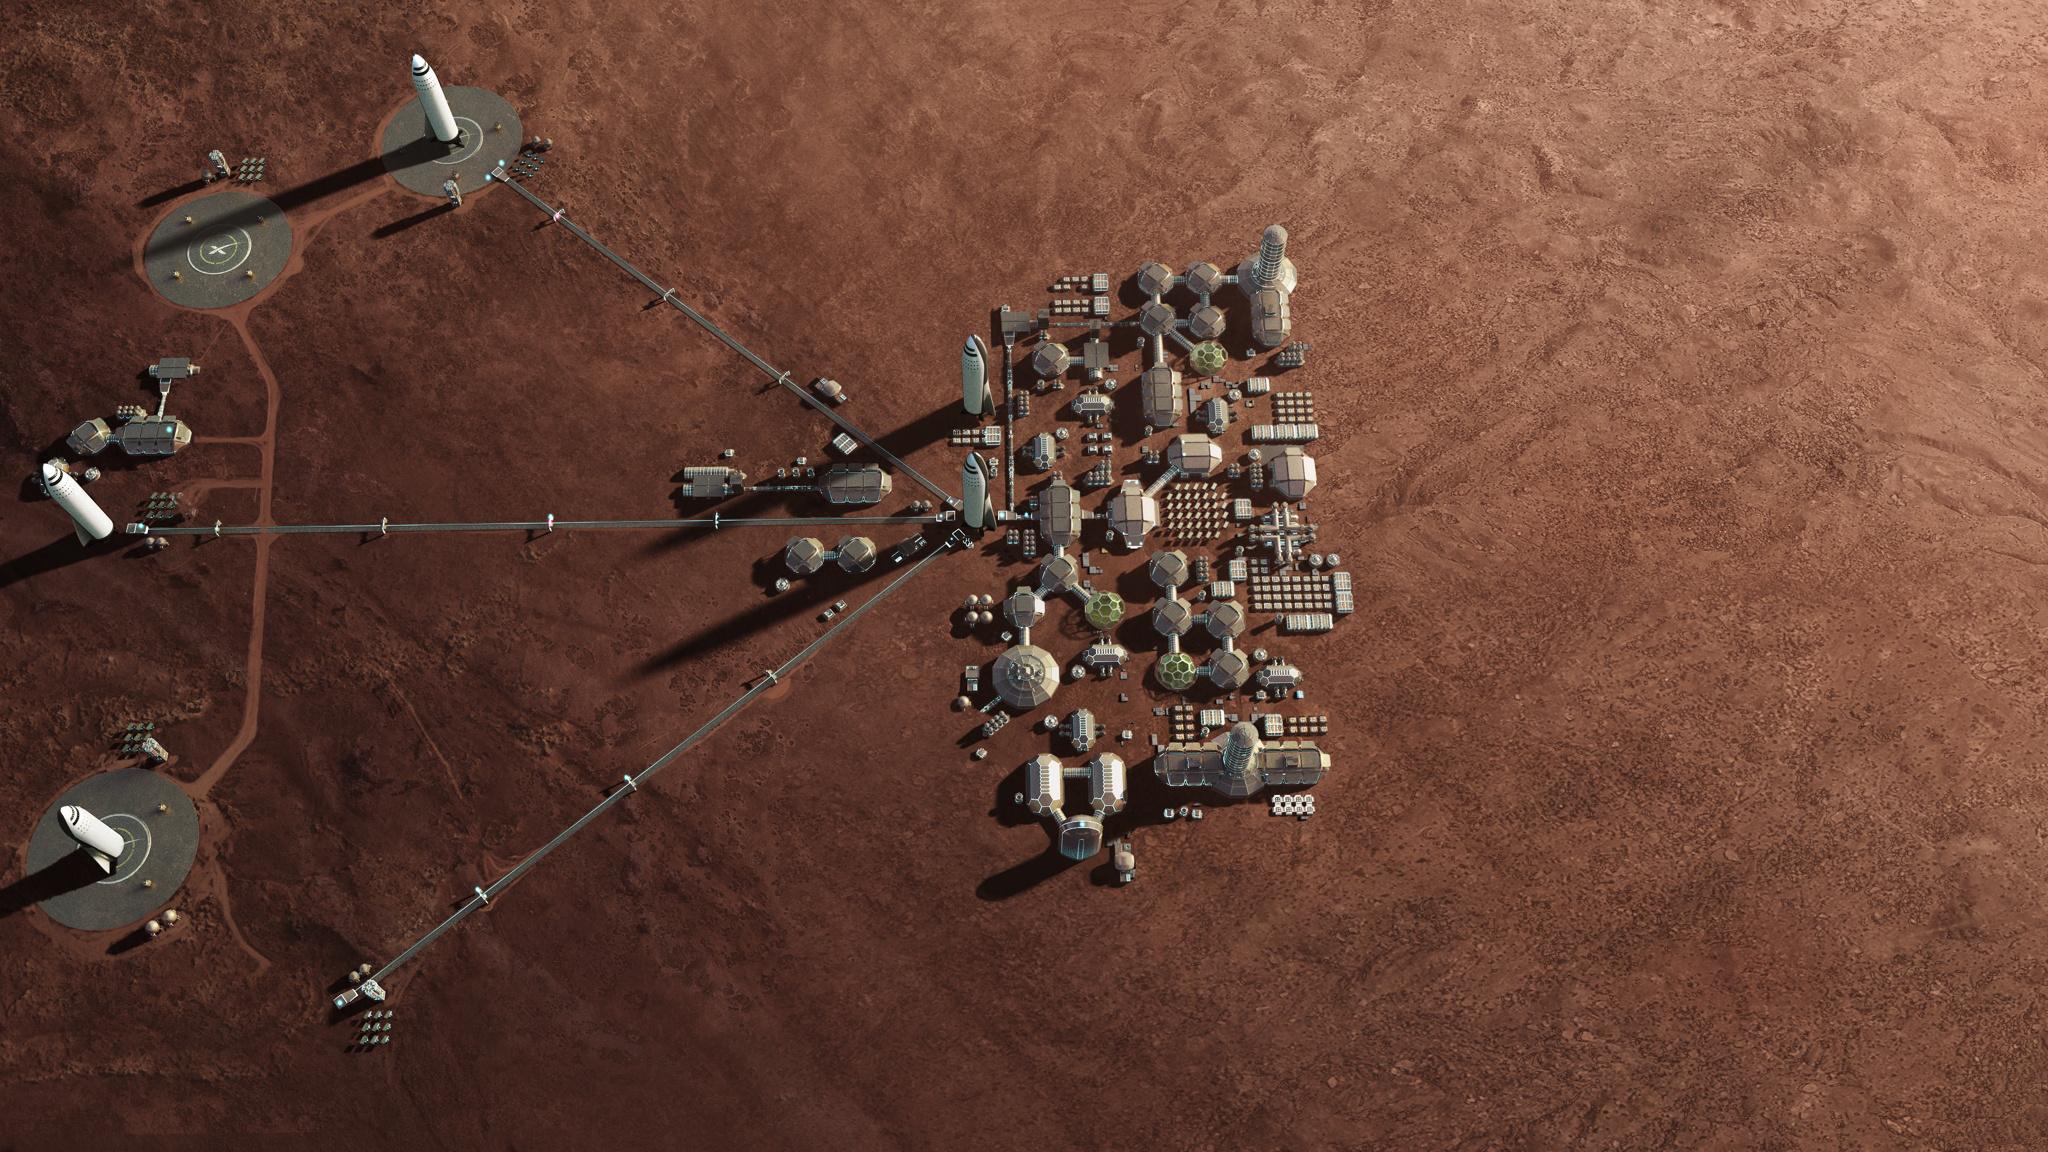 Expansion of Mars Basecamp